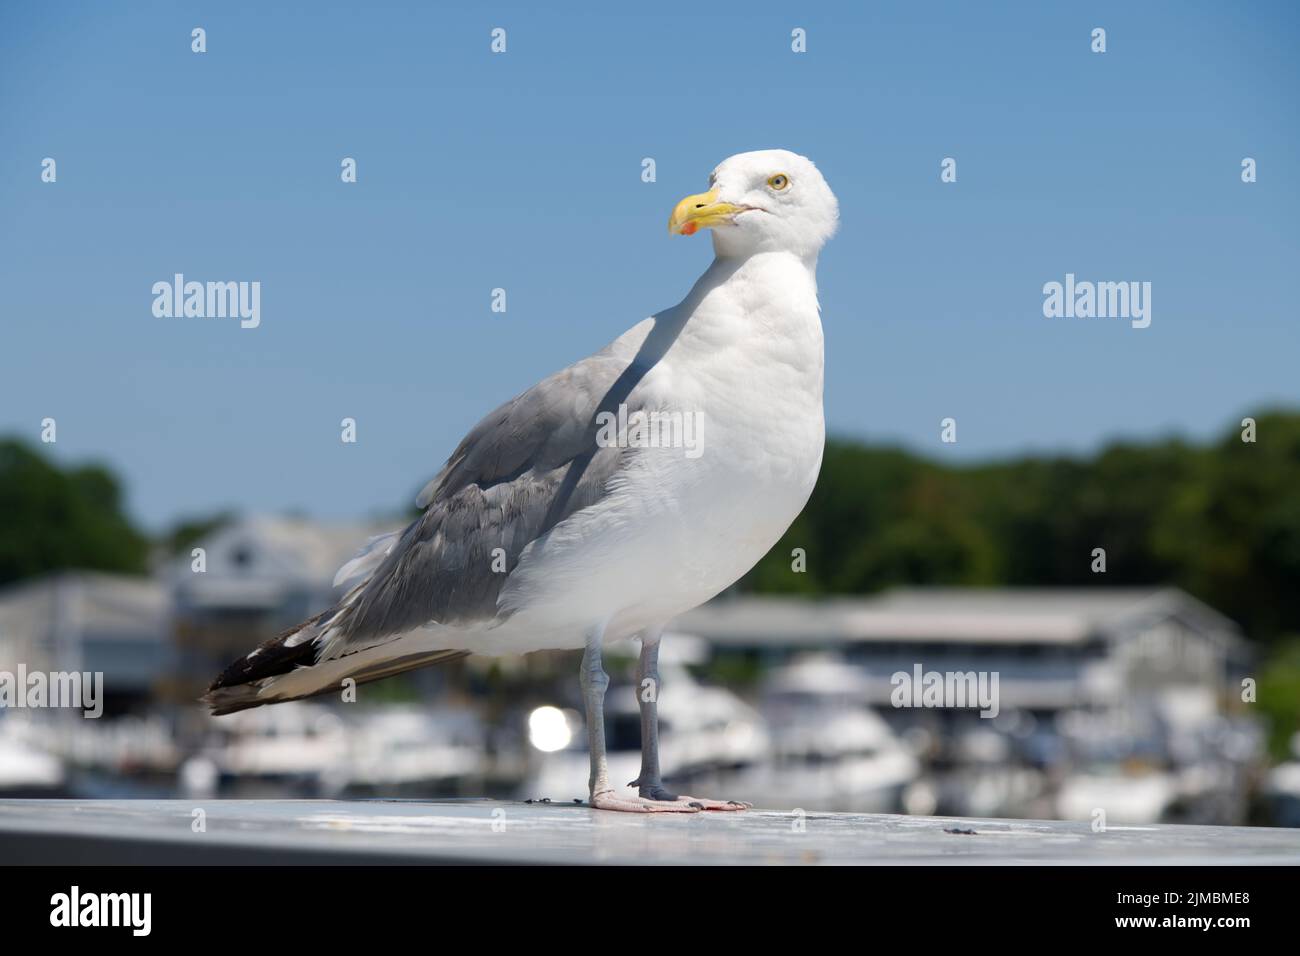 A Seagull (Laridae) poses for a photo in Falmouth Harbor, Cape Cod, Massachusetts, USA Stock Photo